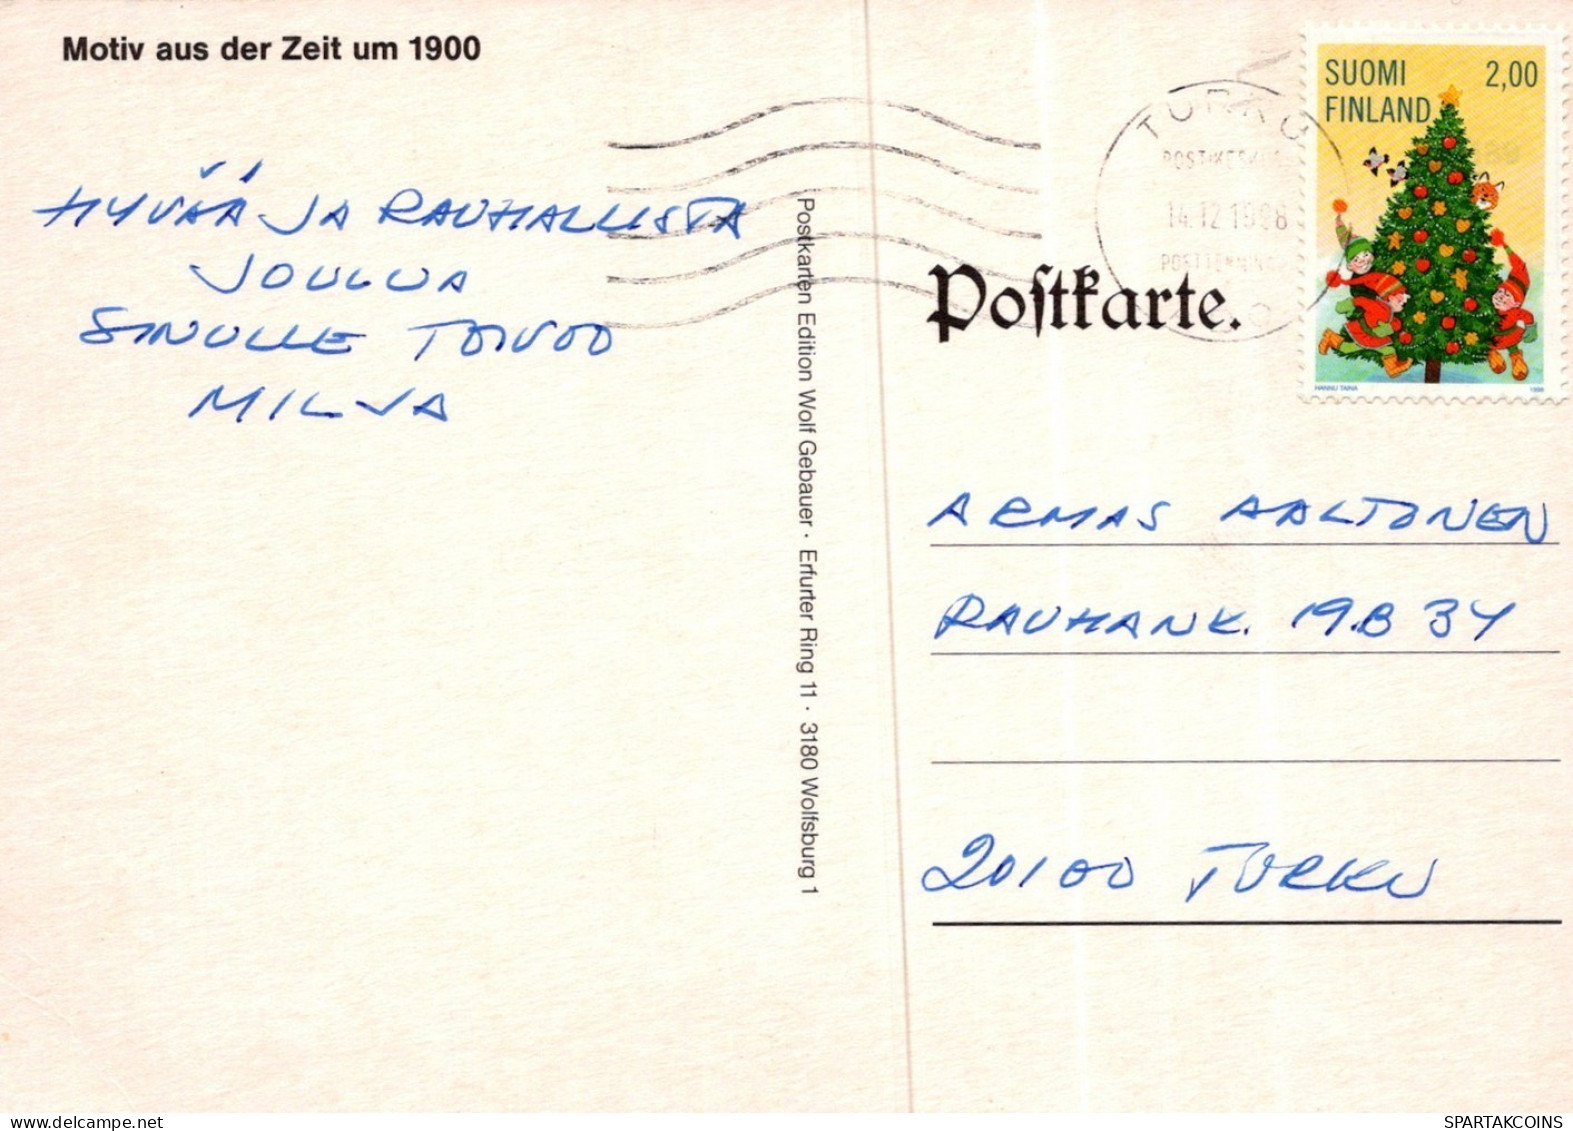 WEIHNACHTSMANN SANTA CLAUS ENGEL WEIHNACHTSFERIEN Vintage Postkarte CPSM #PAK145.DE - Santa Claus